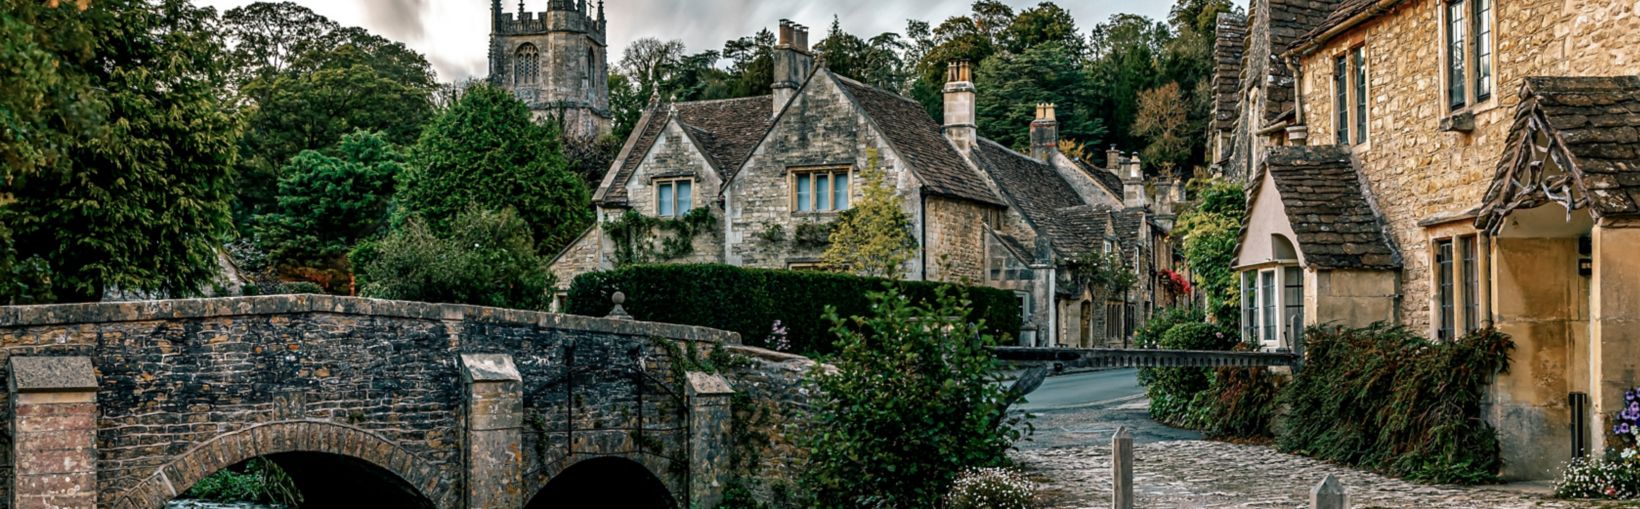 Blick auf das malerische Castle Combe Village in England